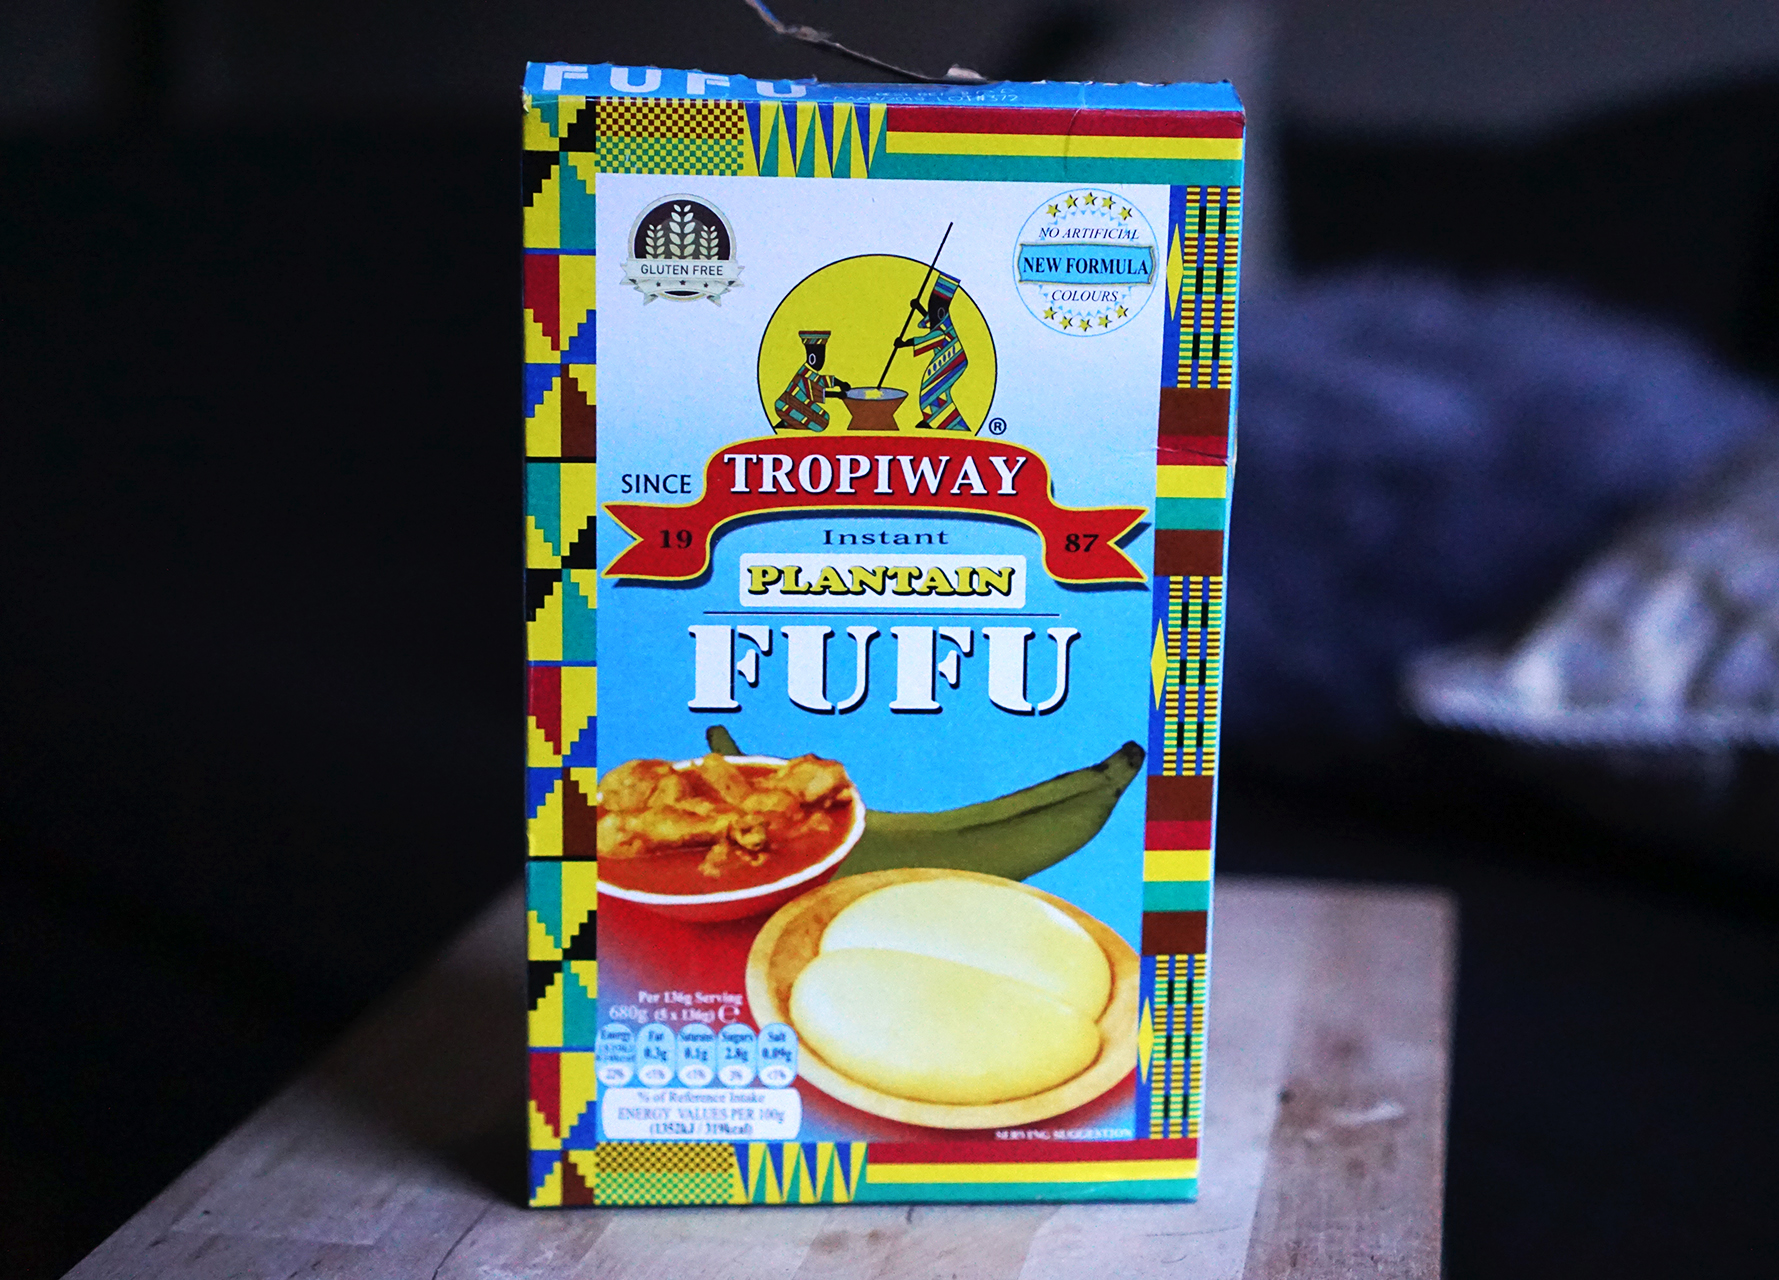 Gluten free fufu flour for dumplings